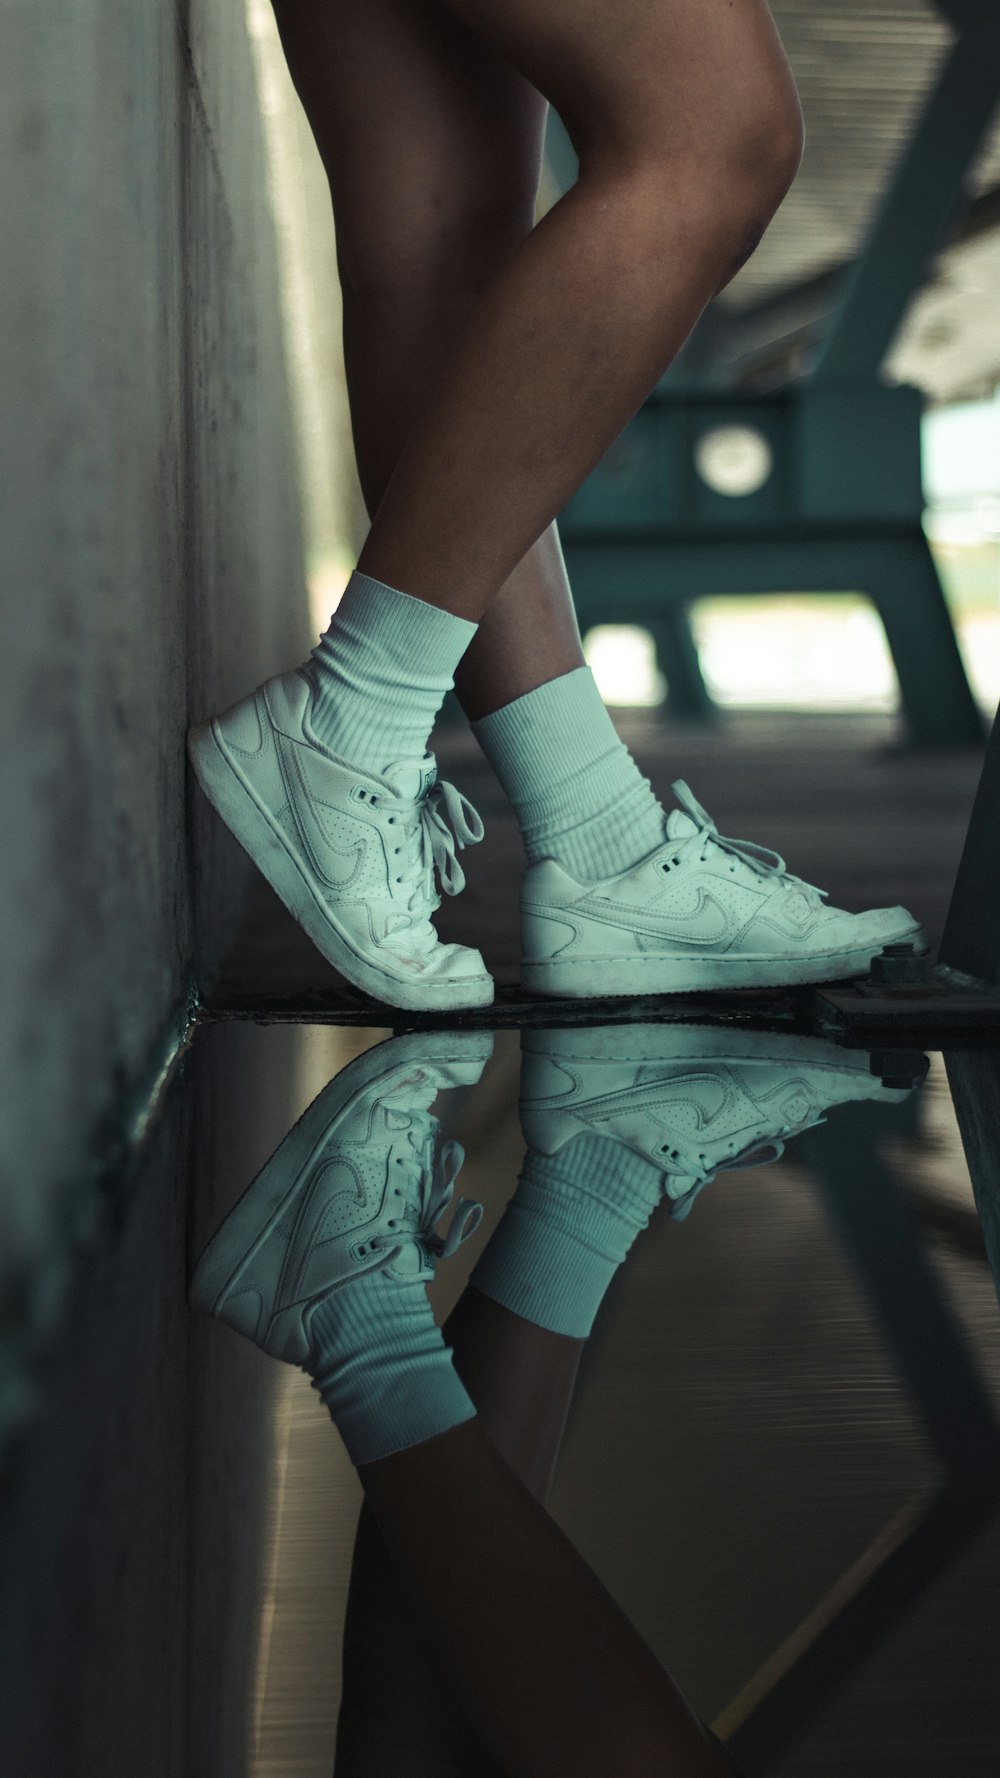 person wearing white nike athletic shoes photo – Free Reflect Image on  Unsplash